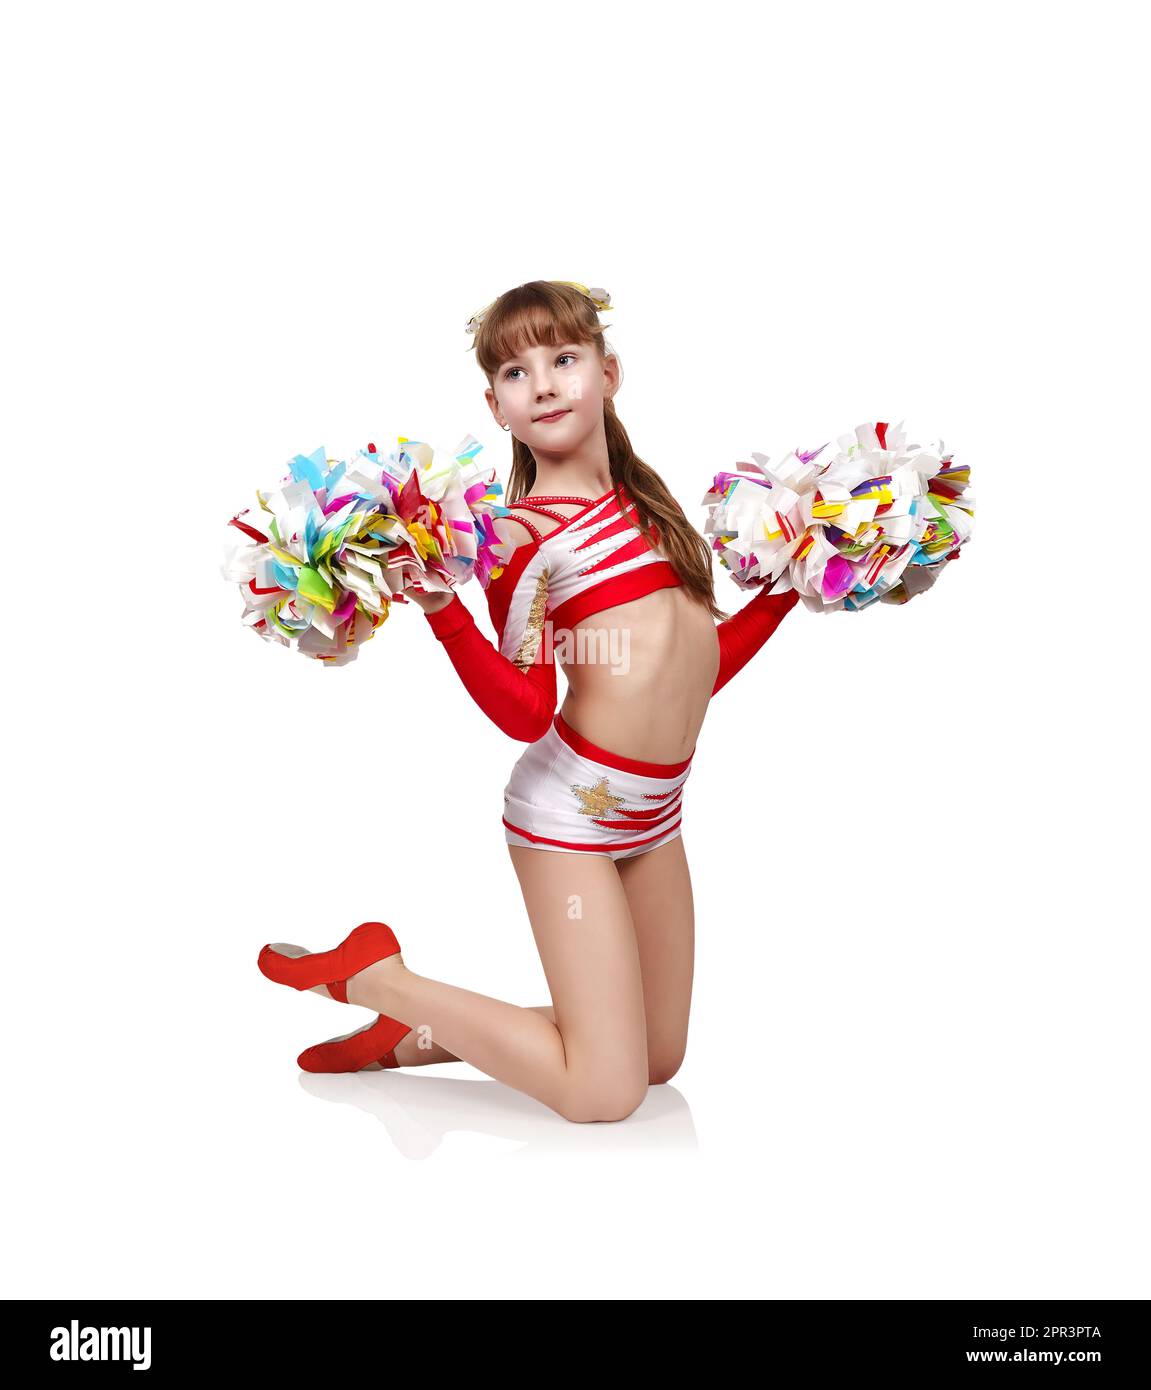 https://c8.alamy.com/comp/2PR3PTA/young-cheerleader-girl-in-uniform-kneeling-with-pompons-2PR3PTA.jpg